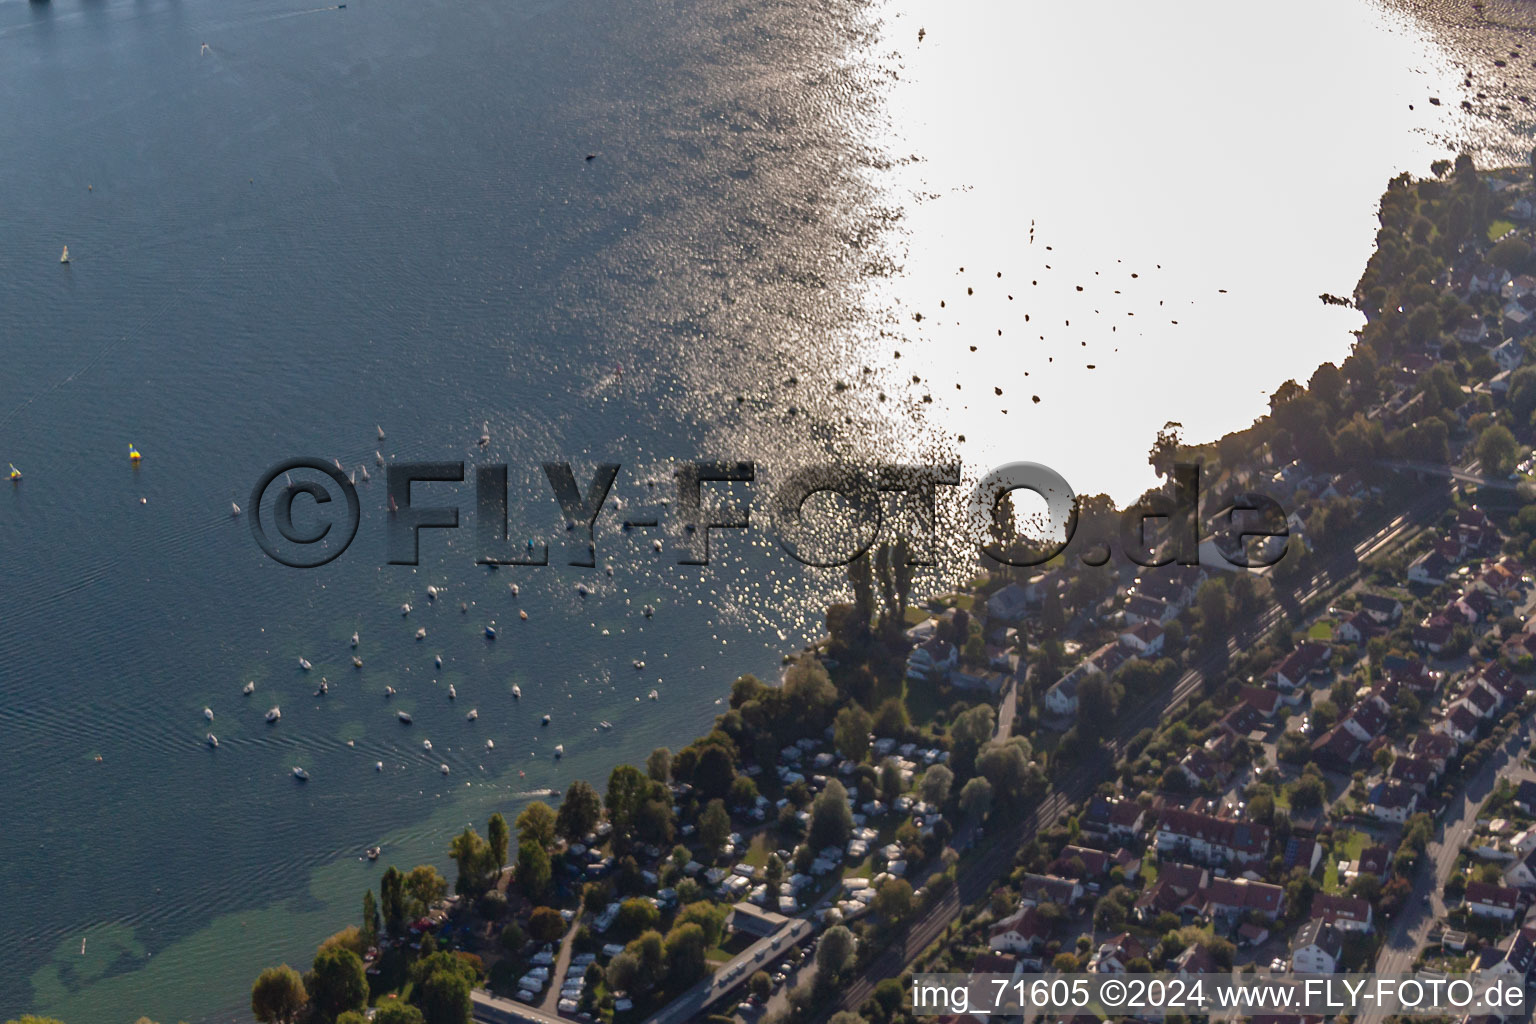 Vue aérienne de Camping au bord du lac à Allensbach dans le département Bade-Wurtemberg, Allemagne